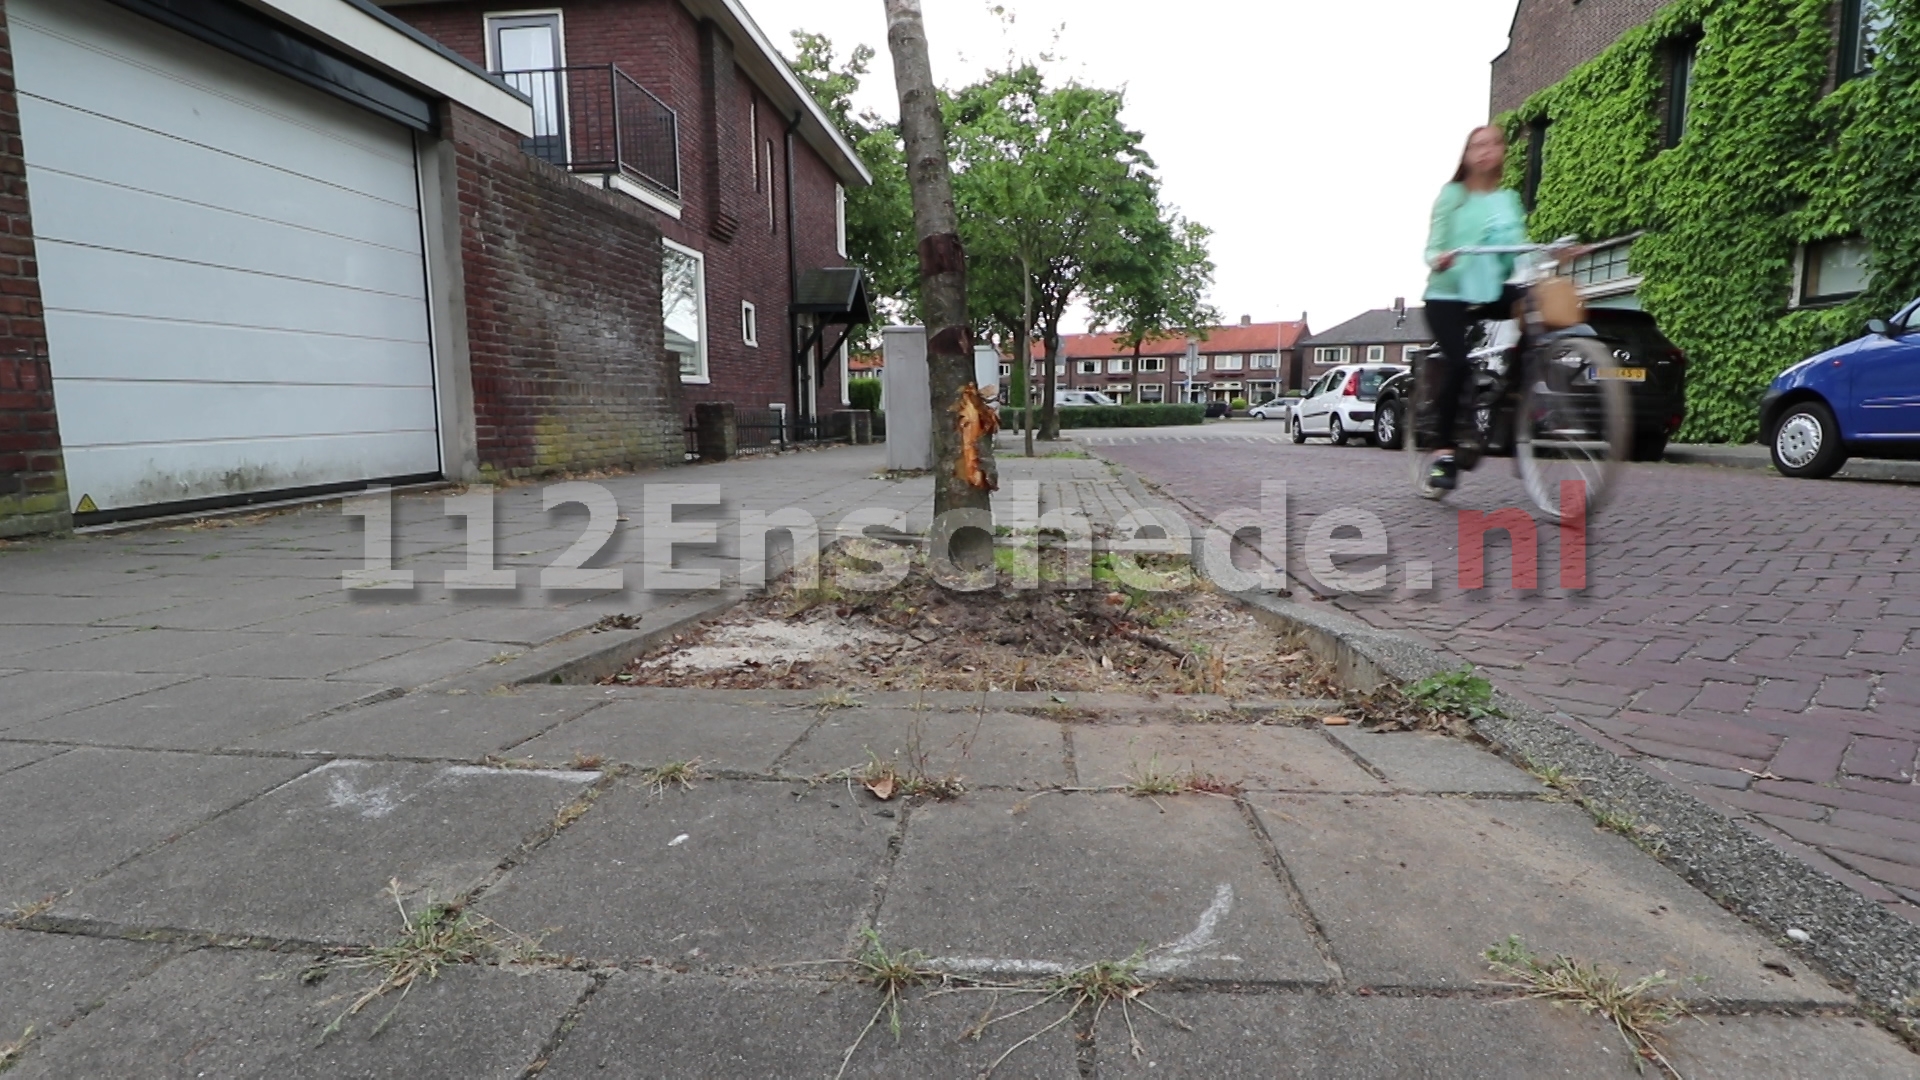 Jongetje (5) uit Enschede pakt auto om naar grote broer in buitenland te rijden en botst tegen boom